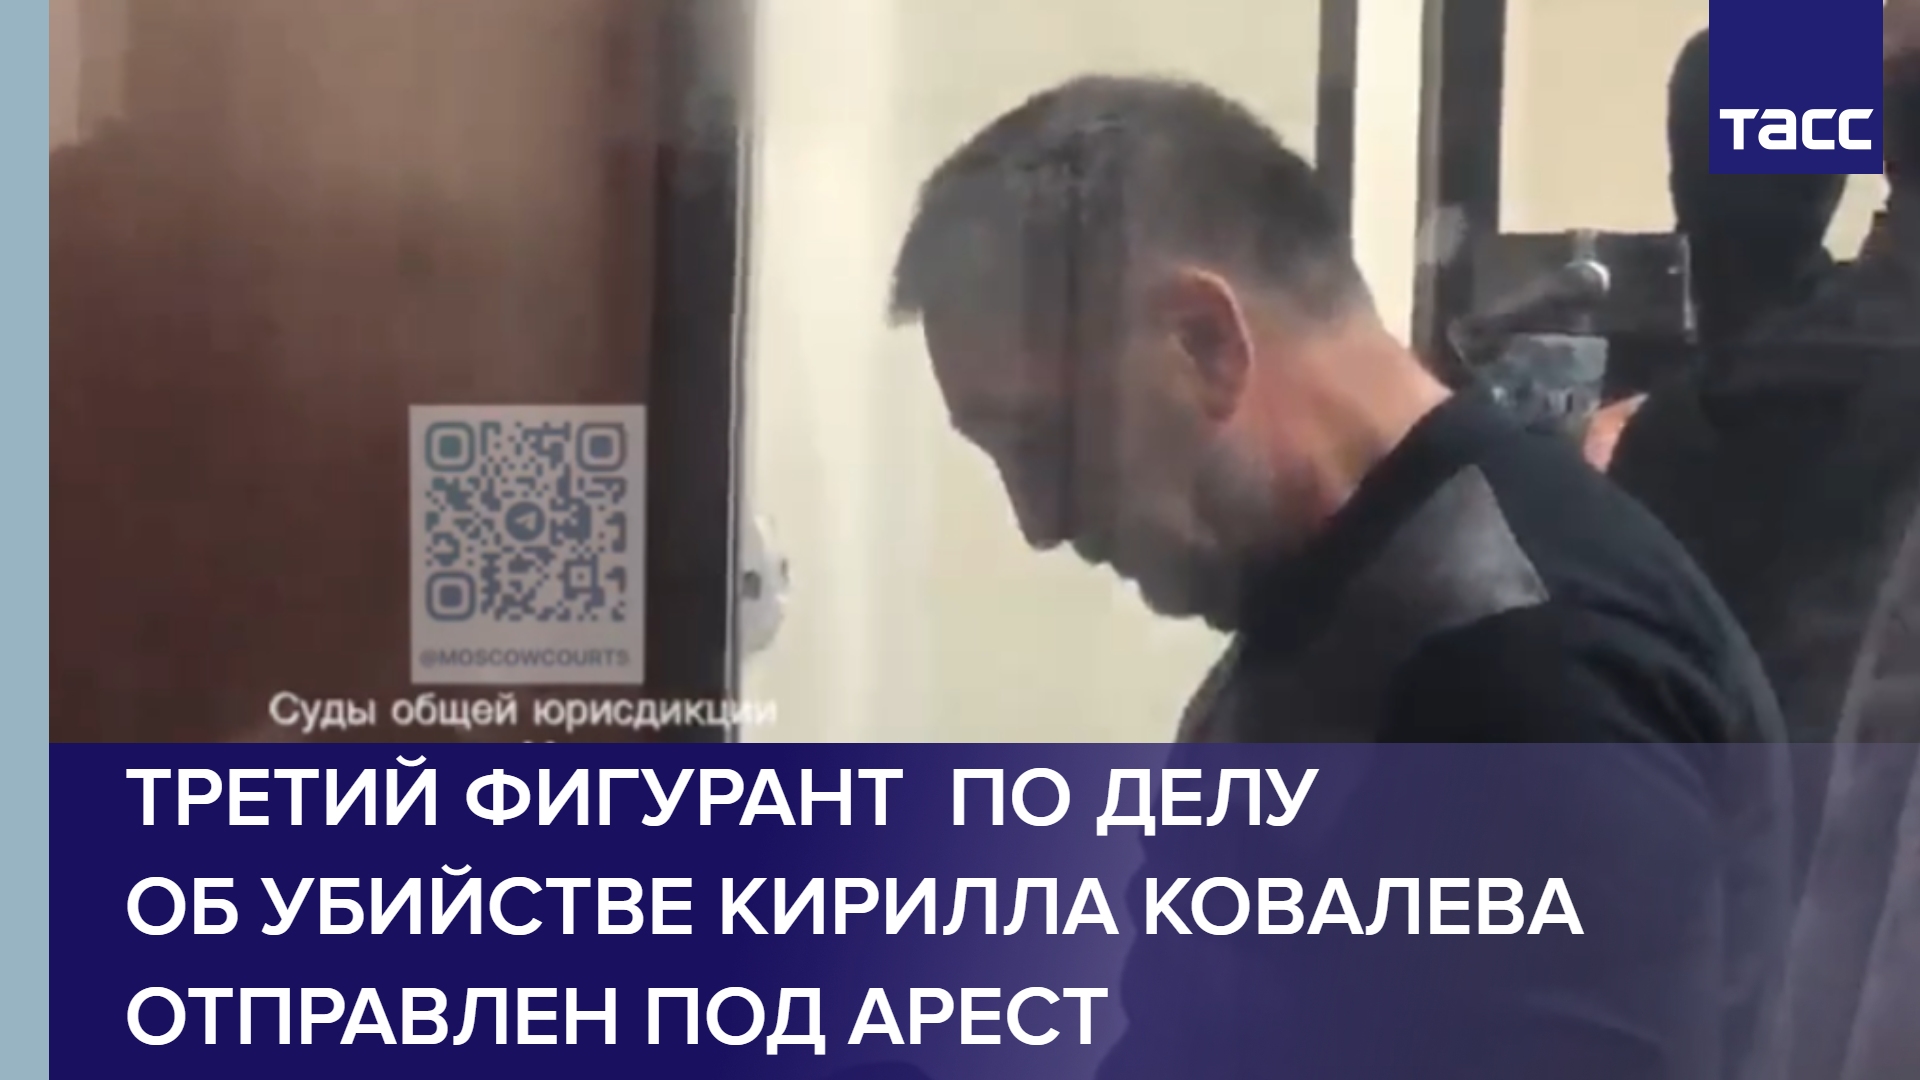 Третий фигурант  по делу об убийстве Кирилла Ковалева  отправлен под арест